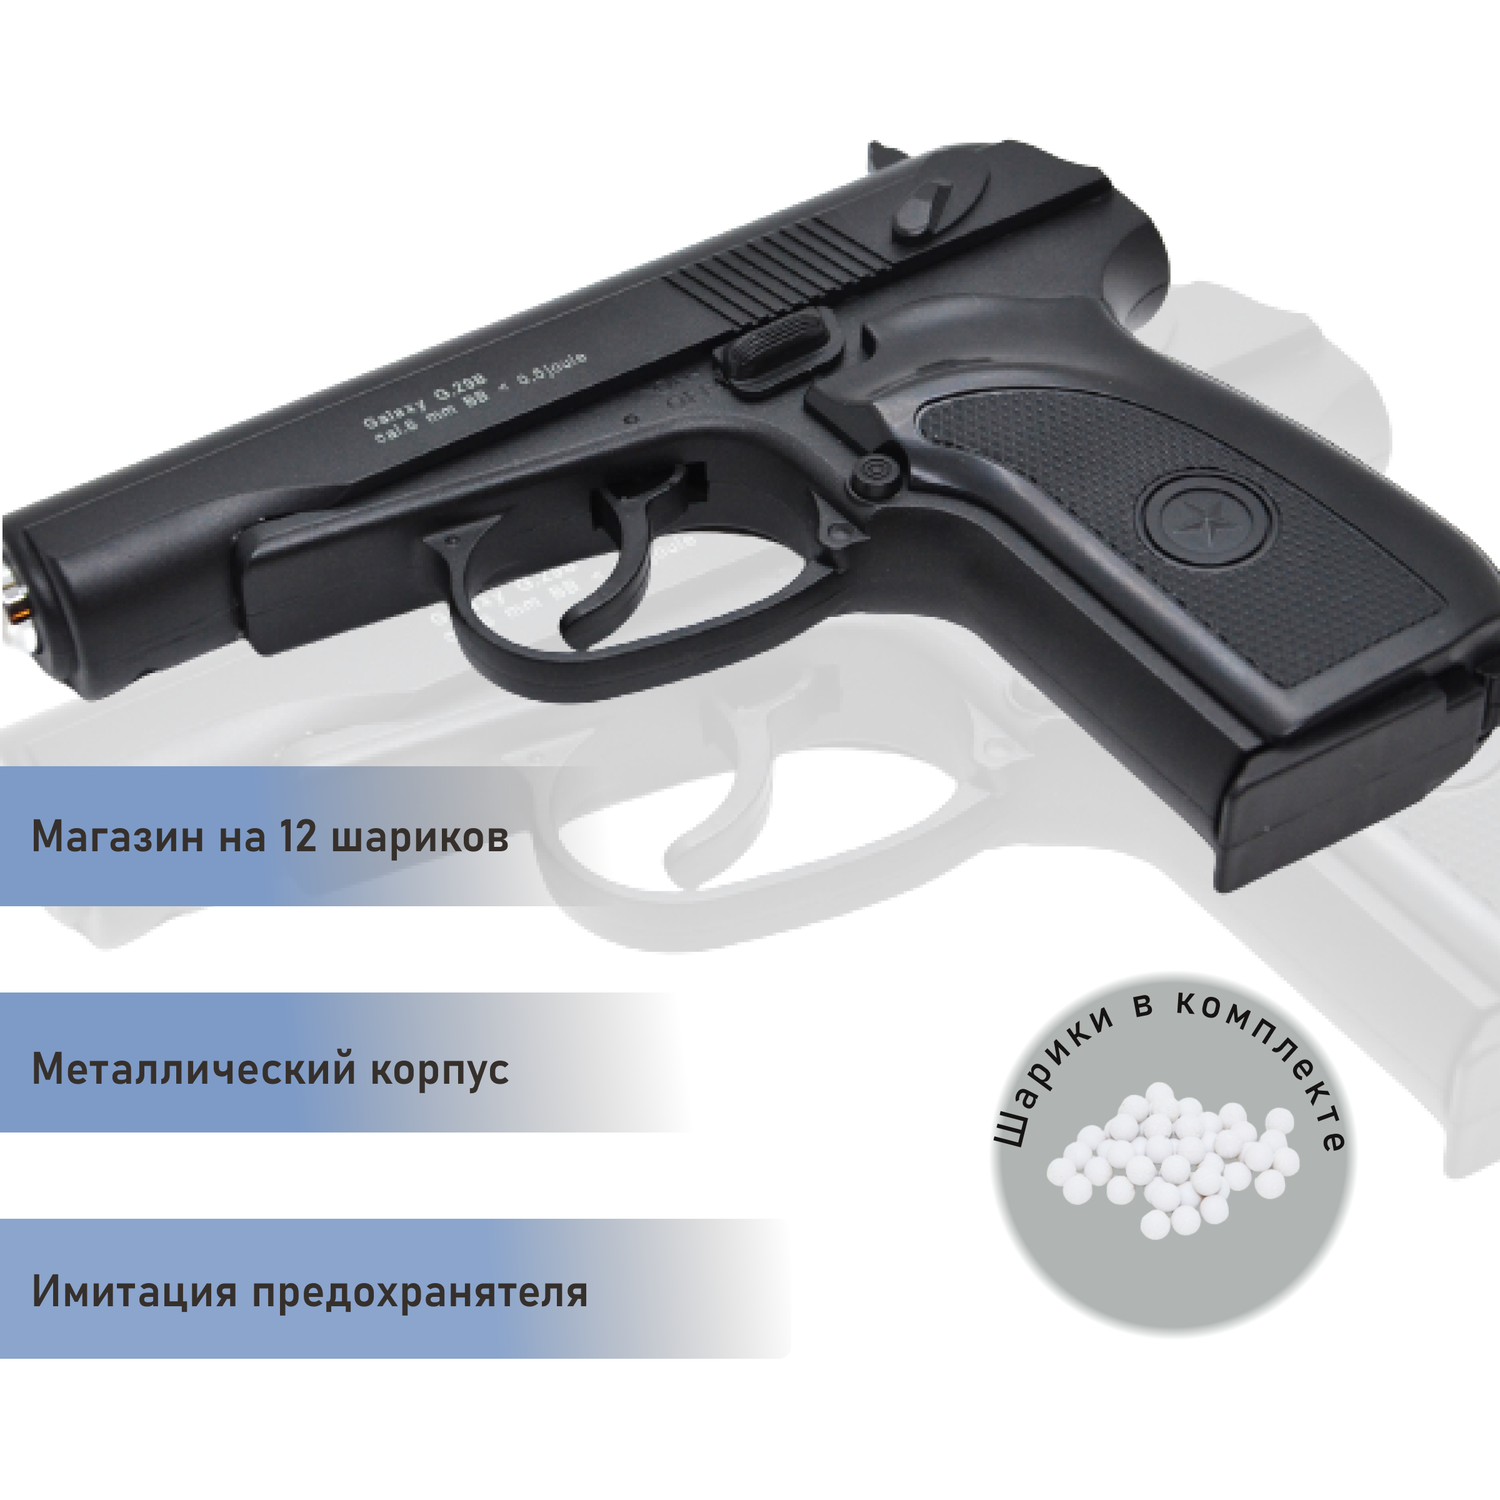 Пневматический пистолет Galaxy Макарова черная рукоятка и второй магазин - фото 3